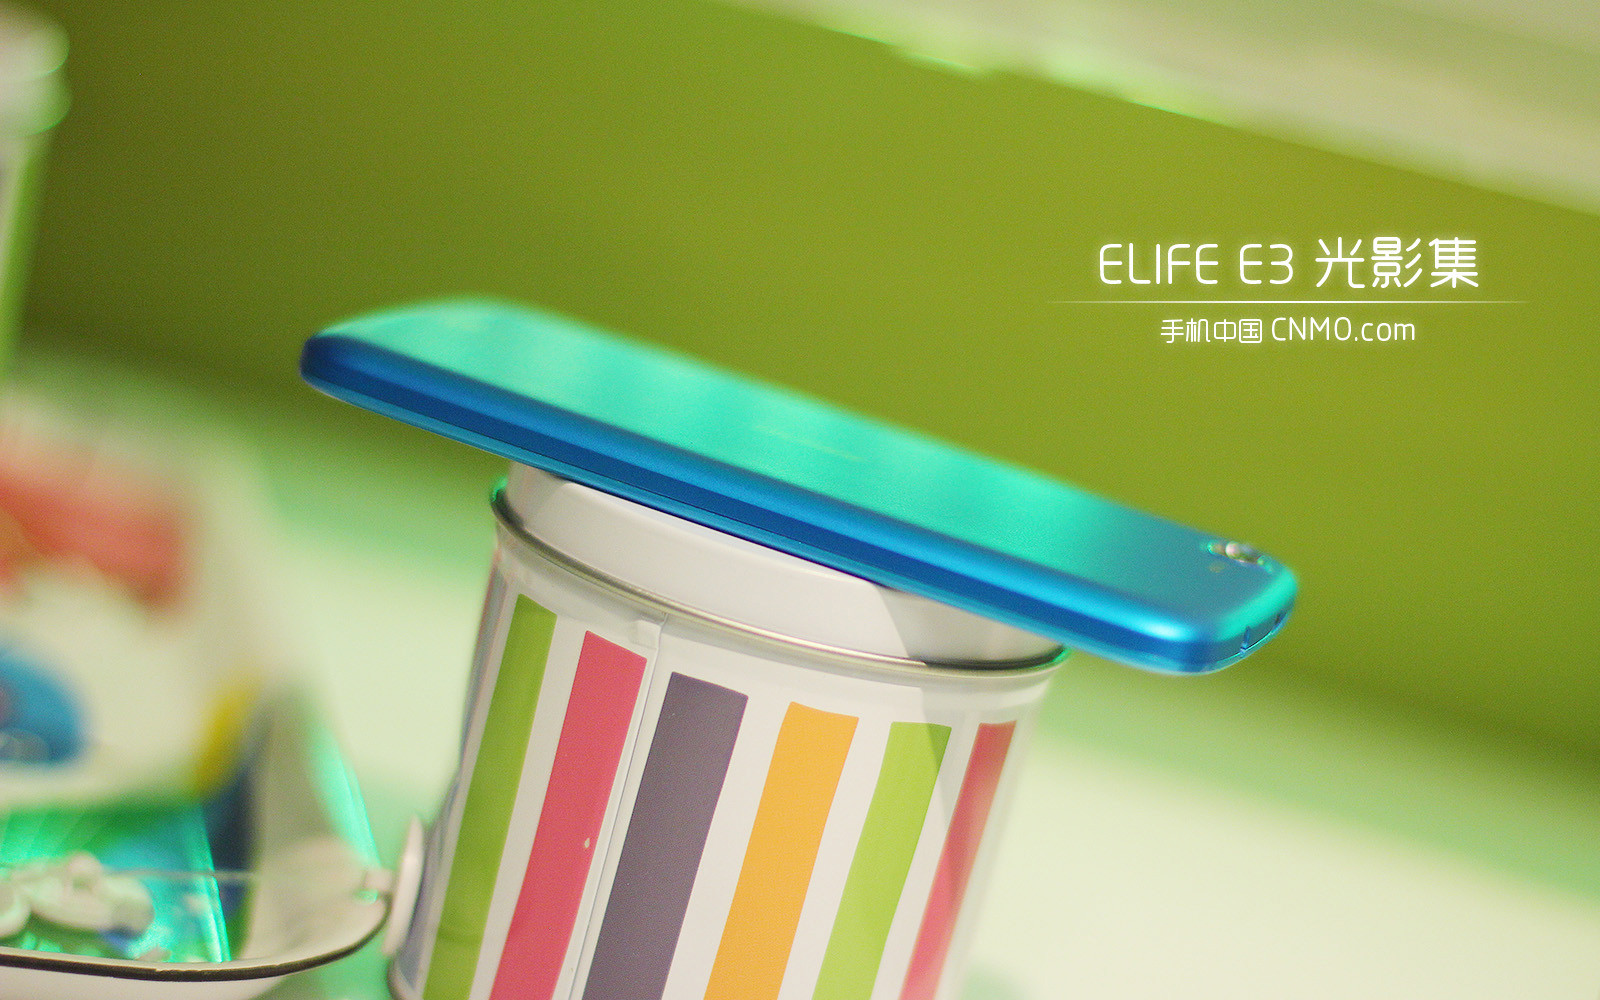 光影集:超薄质感美机 金立ELIFE E3